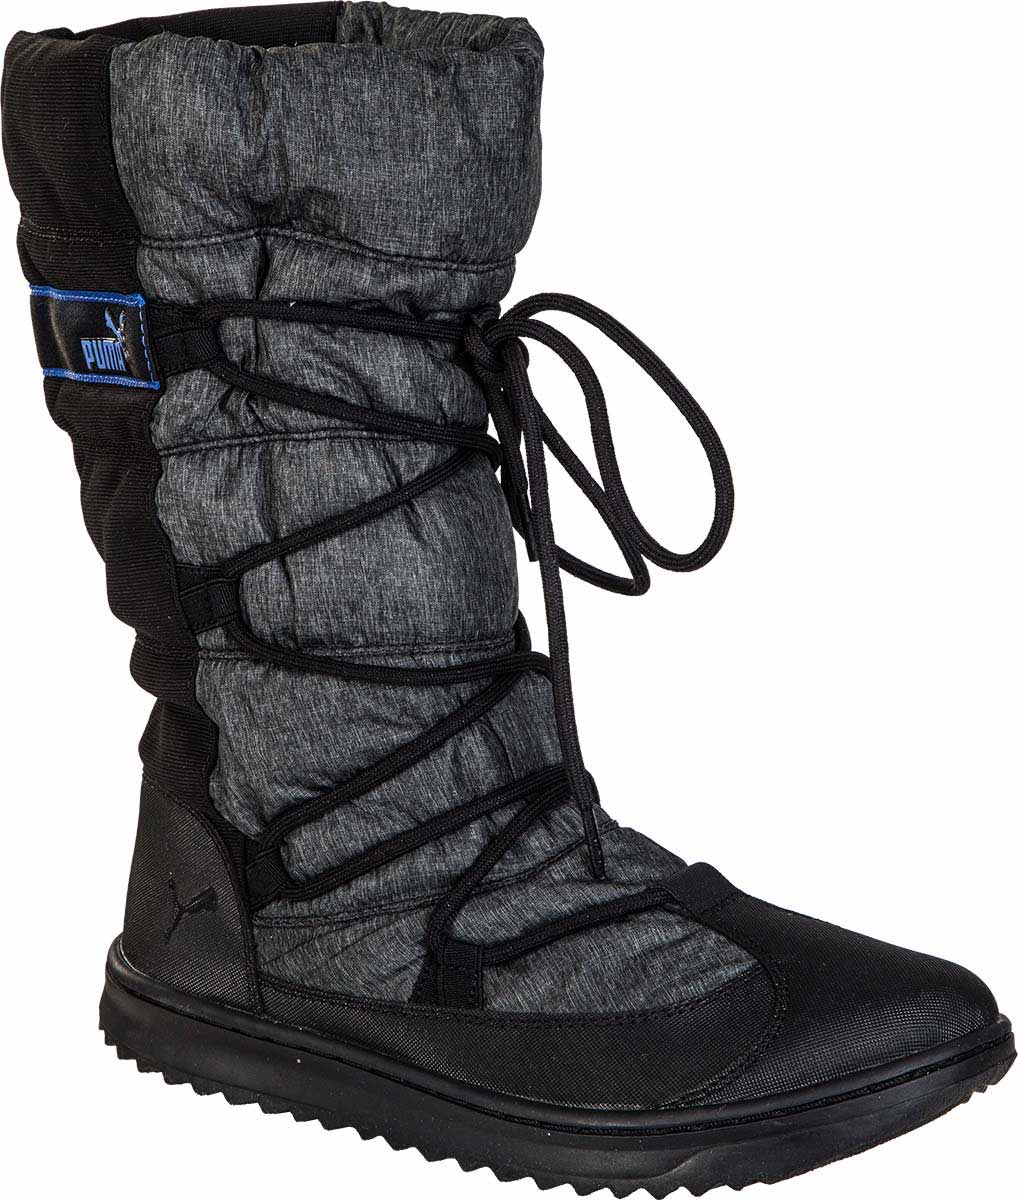 SNOW NYLON 2 BOOT WNS - Dámska zimná obuv